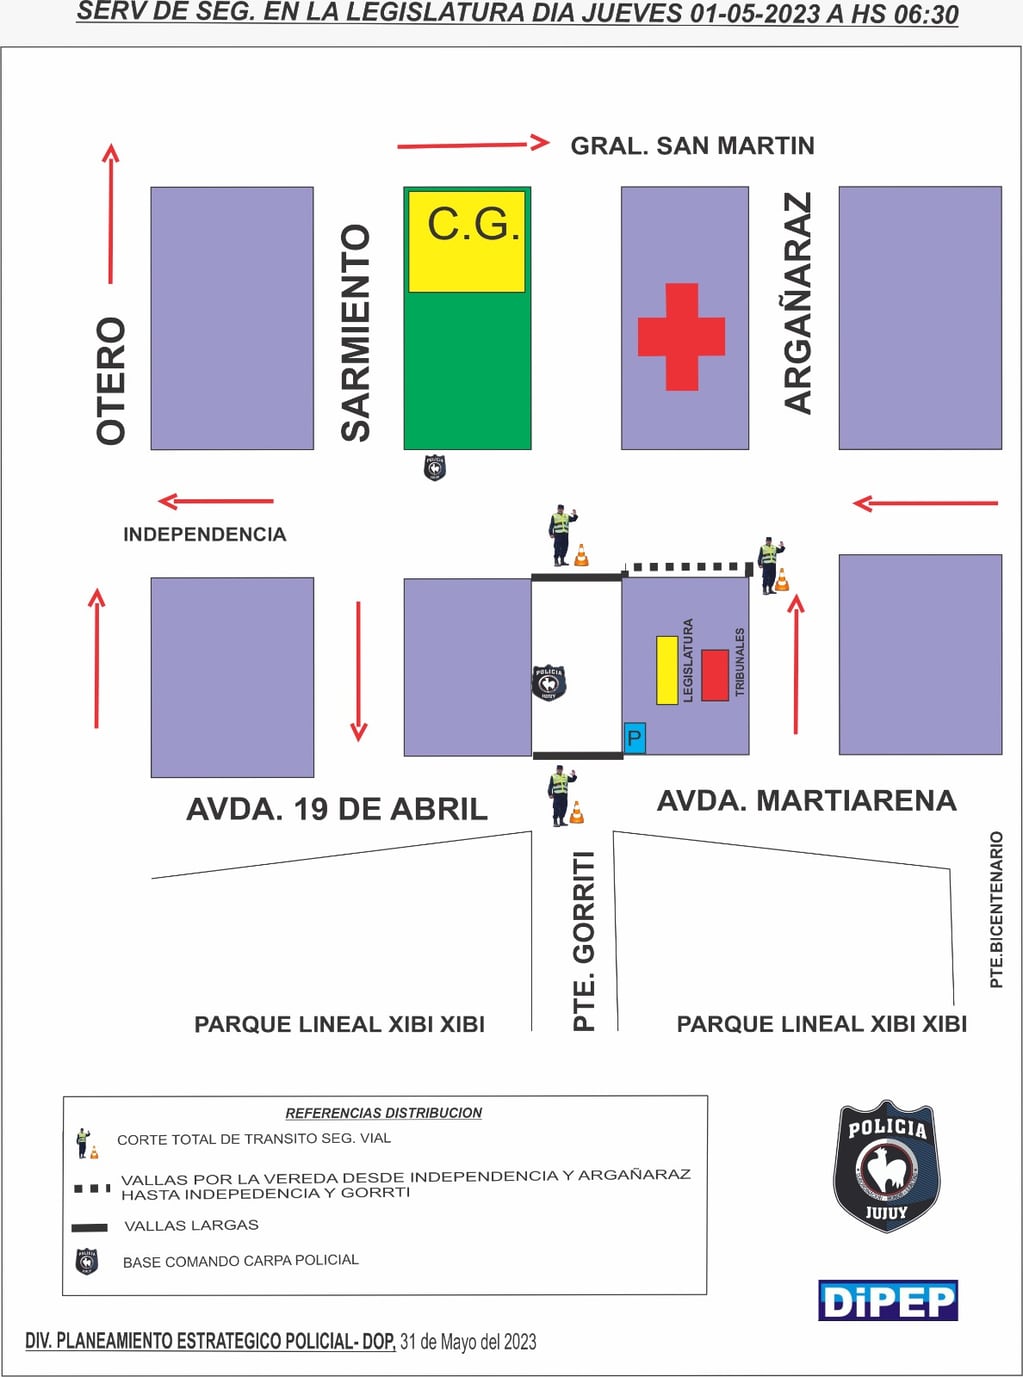 Gráfico proporcionado por la Policía de la Provincia de Jujuy detallando los cortes de calles previstos para este jueves en torno a la Legislatura.